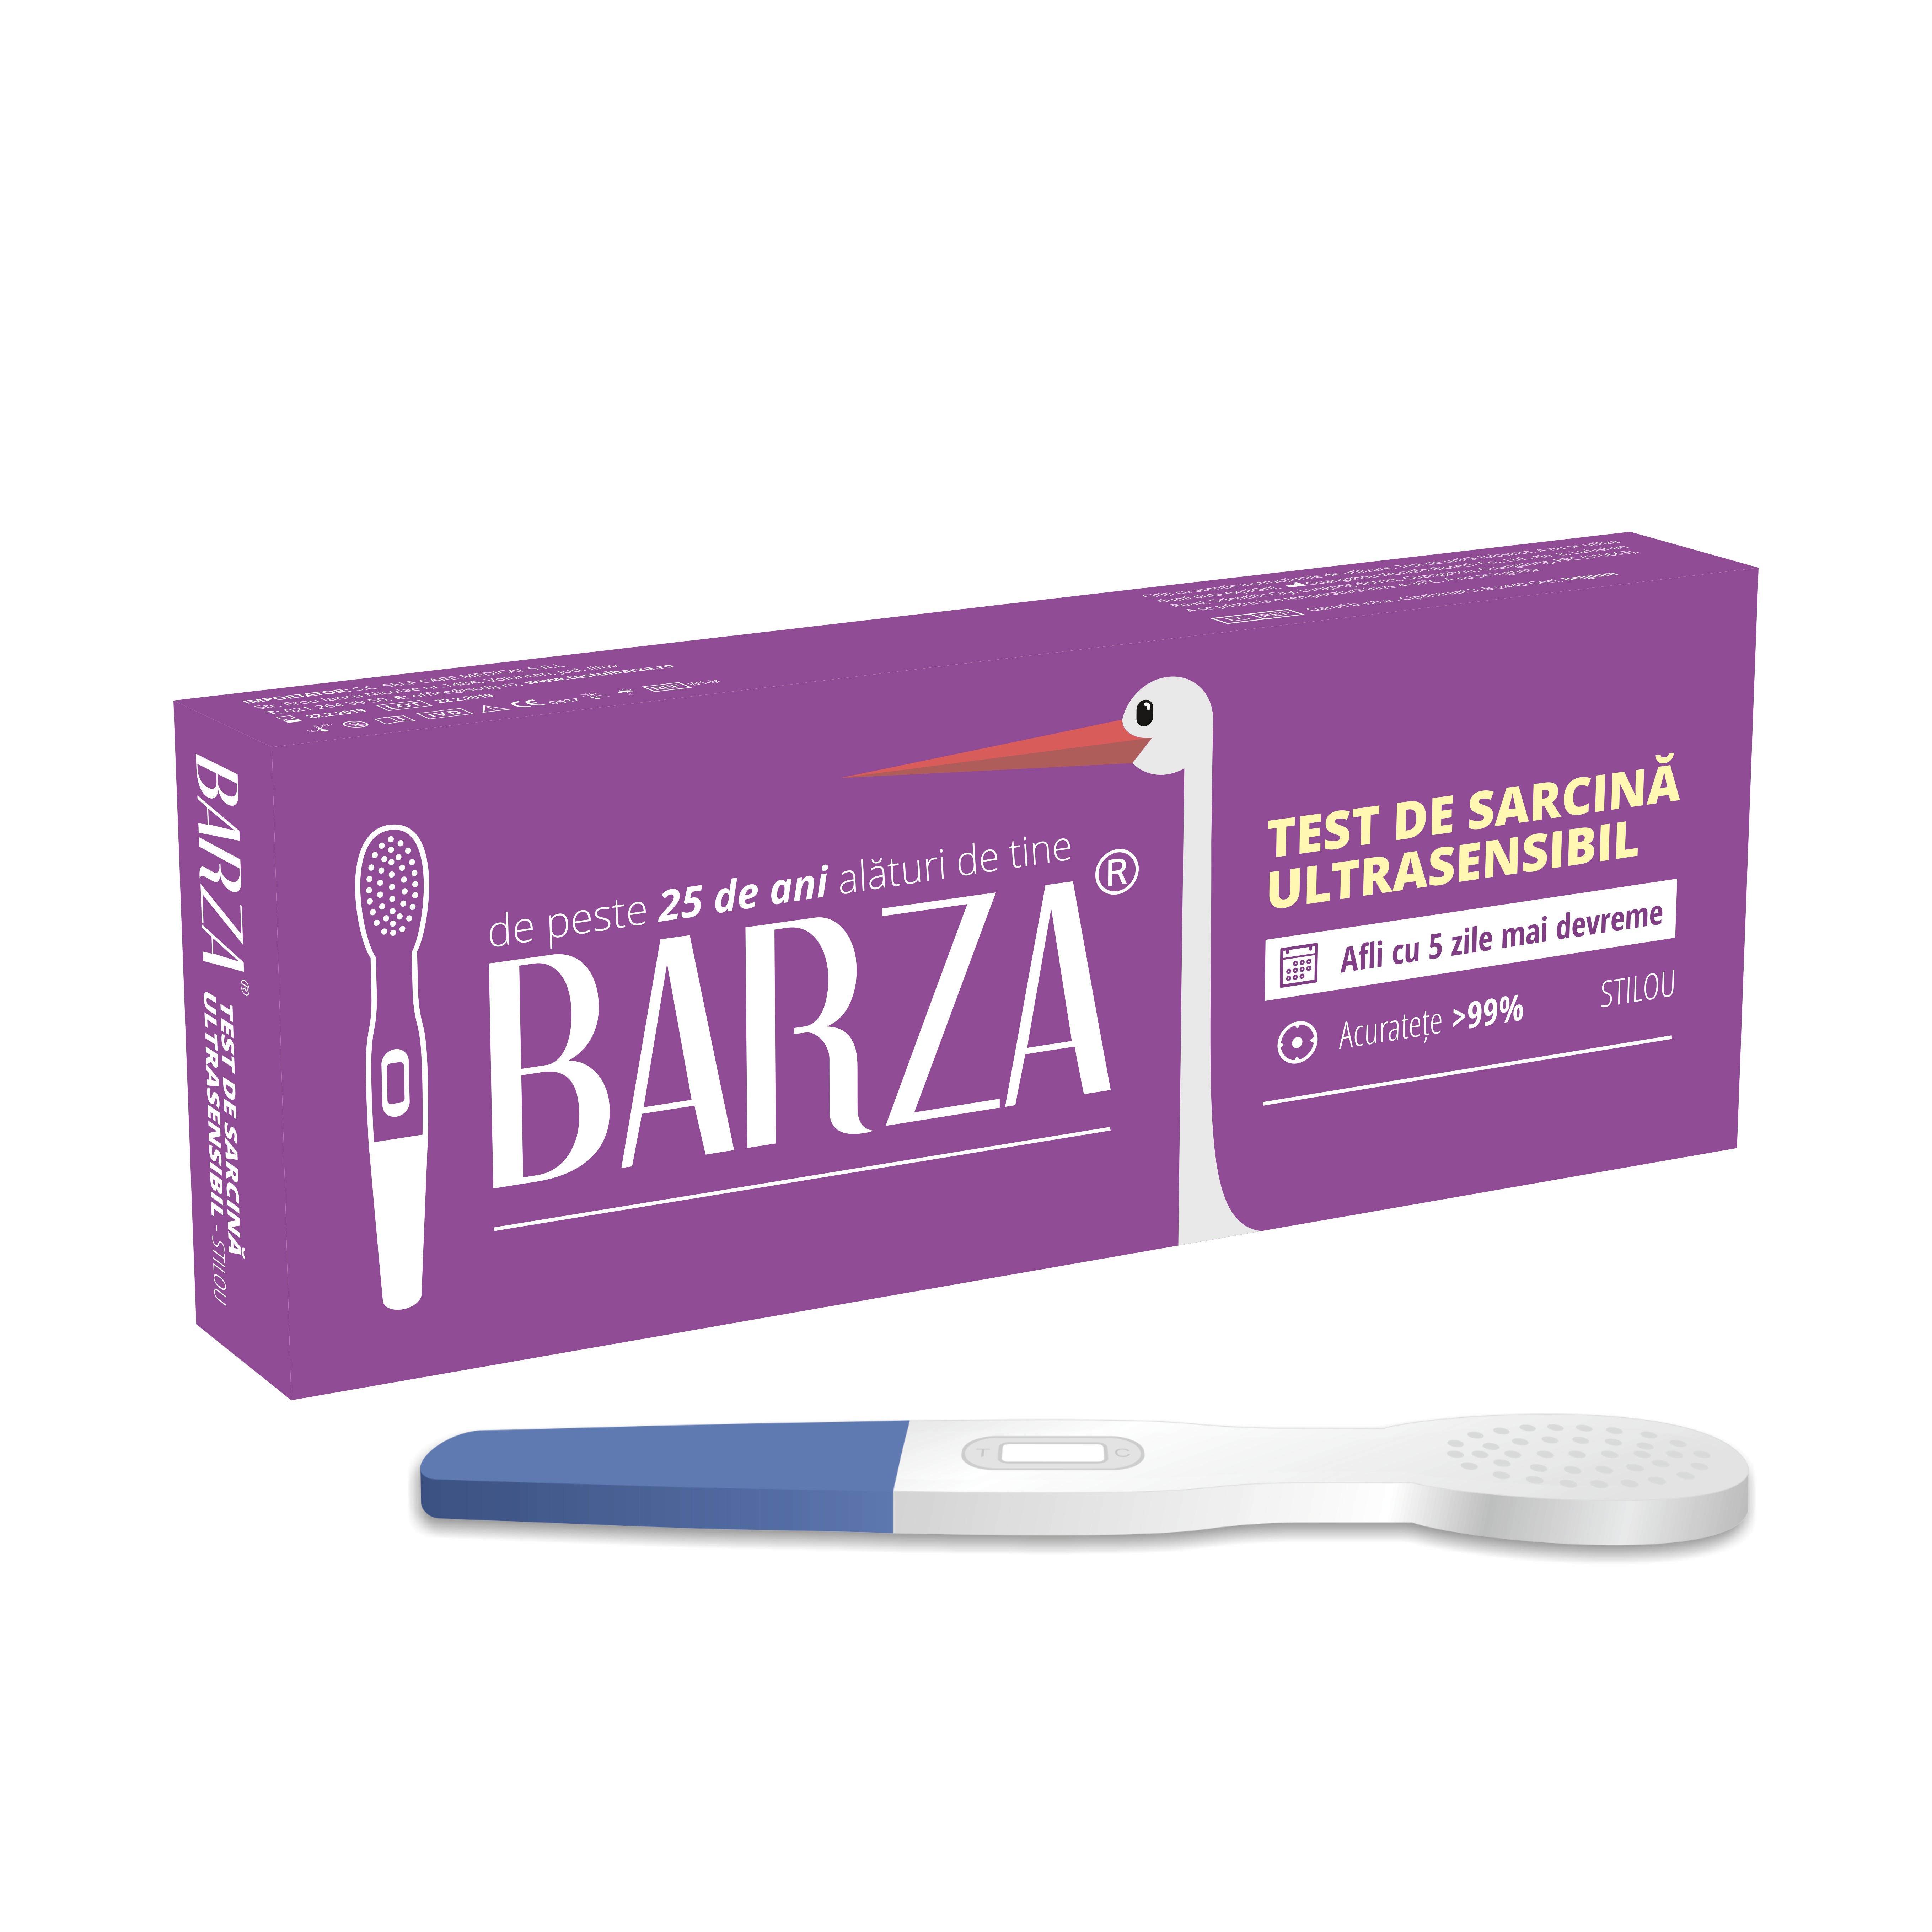 Teste - Barza Test de sarcină ultrasensibil stilou, sinapis.ro